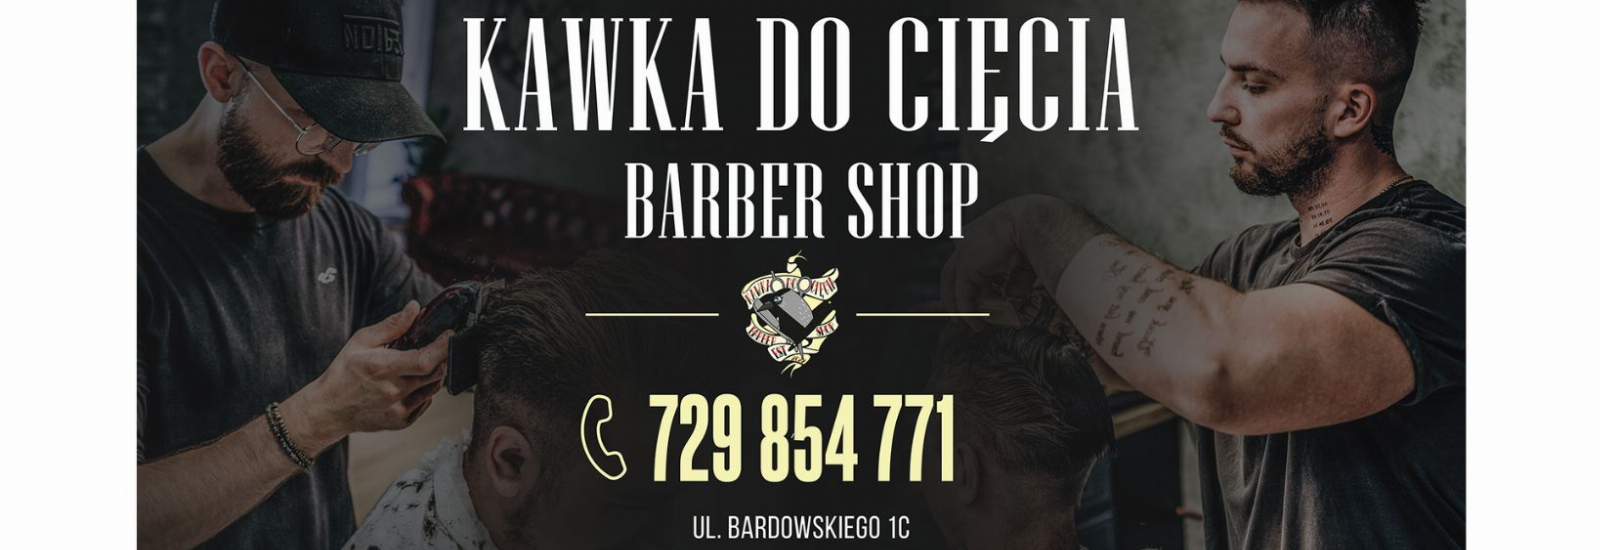 Barber Shop Rzeszów - Kawka do cięcia, Rzeszów, kopia-banner-fb-1640x623-px-5